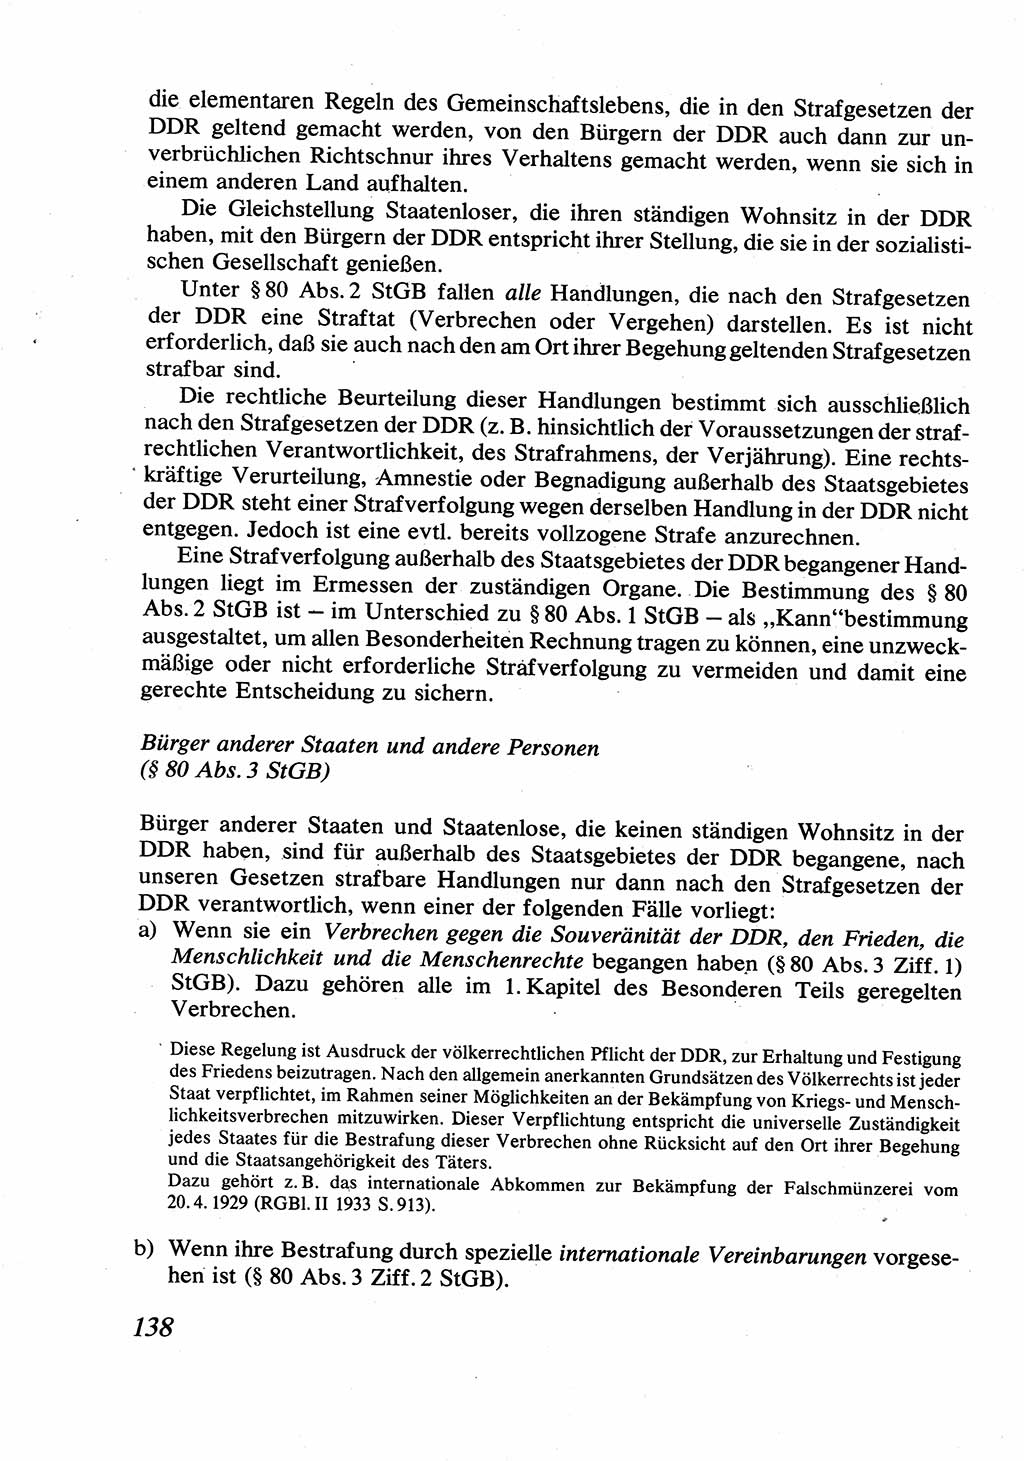 Strafrecht [Deutsche Demokratische Republik (DDR)], Allgemeiner Teil, Lehrbuch 1976, Seite 138 (Strafr. DDR AT Lb. 1976, S. 138)